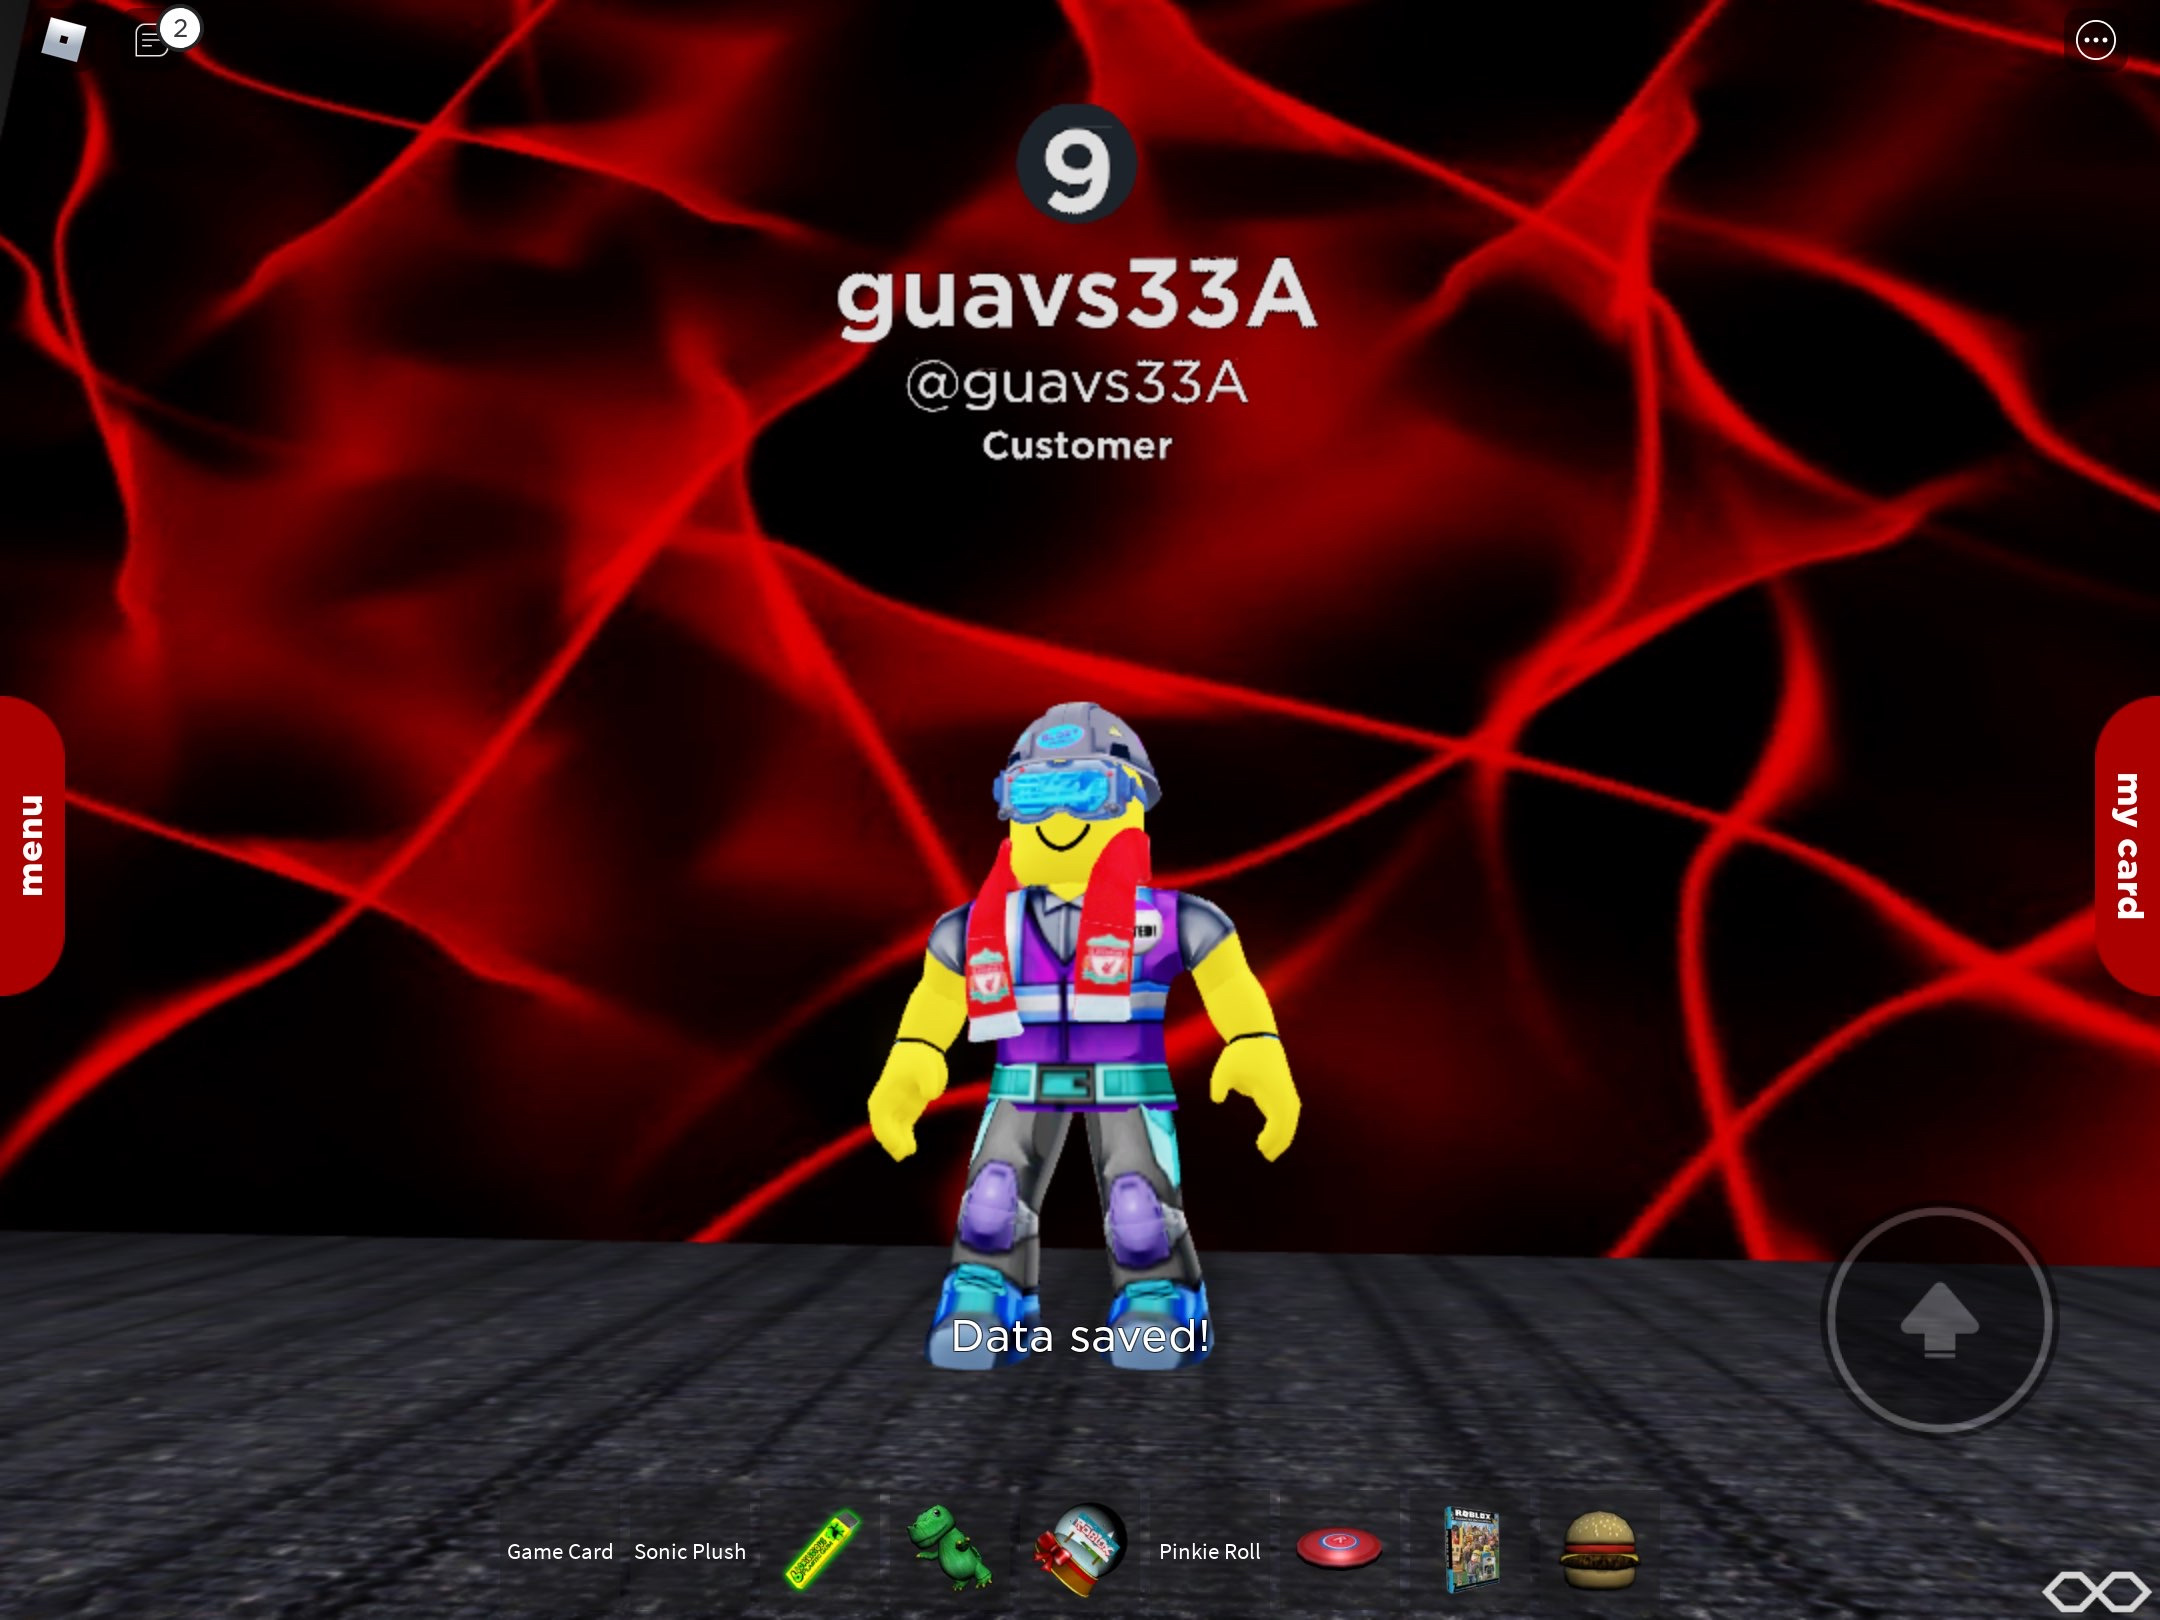 Guavs33a